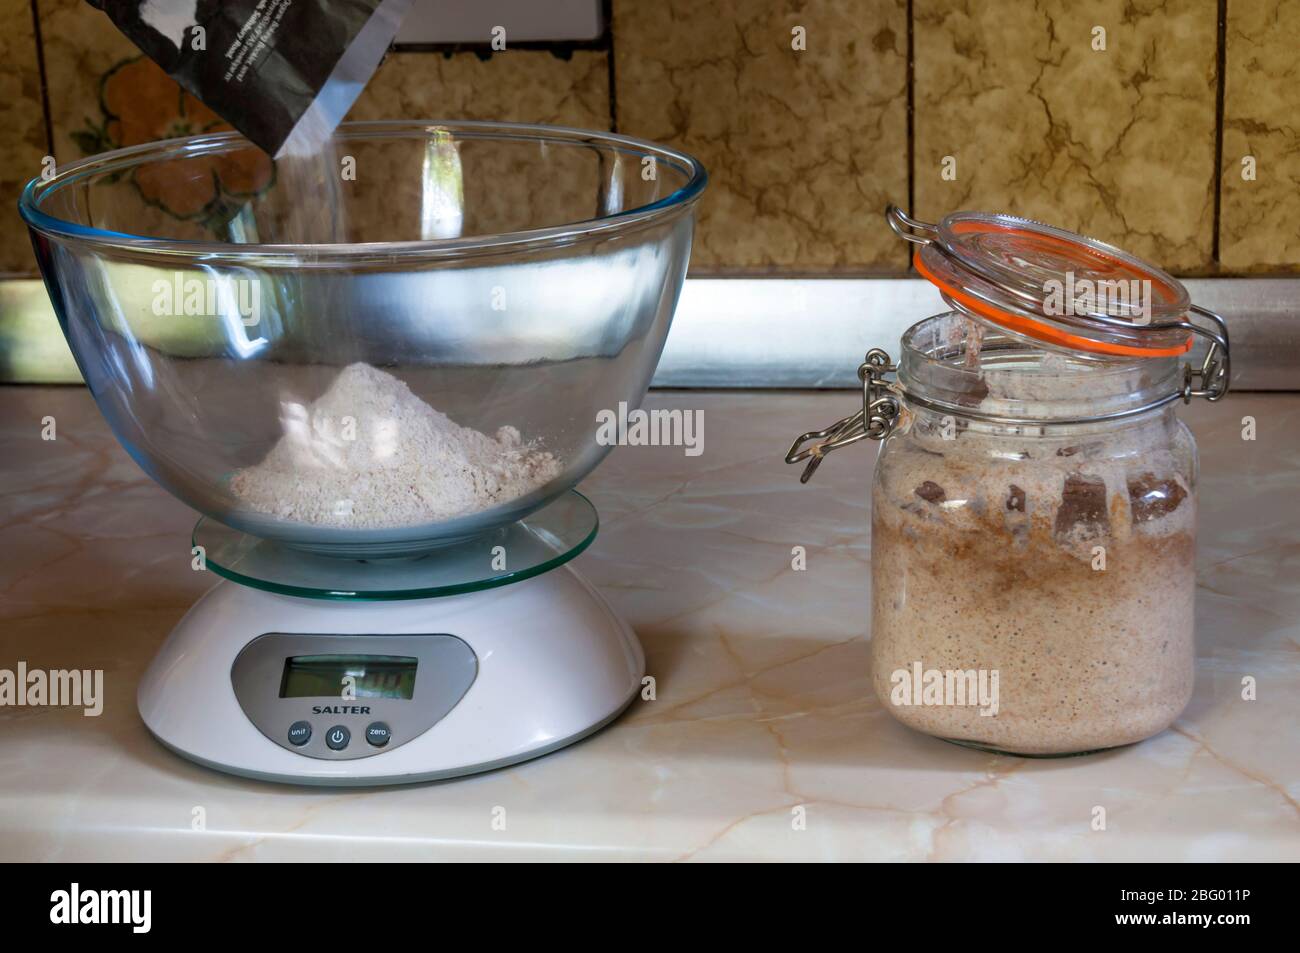 Auswiegen Mehl fertig zu machen Sauerteig Brot mit aktiviertem Sauerteig Starter in einem Glas Kilner Glas. Stockfoto